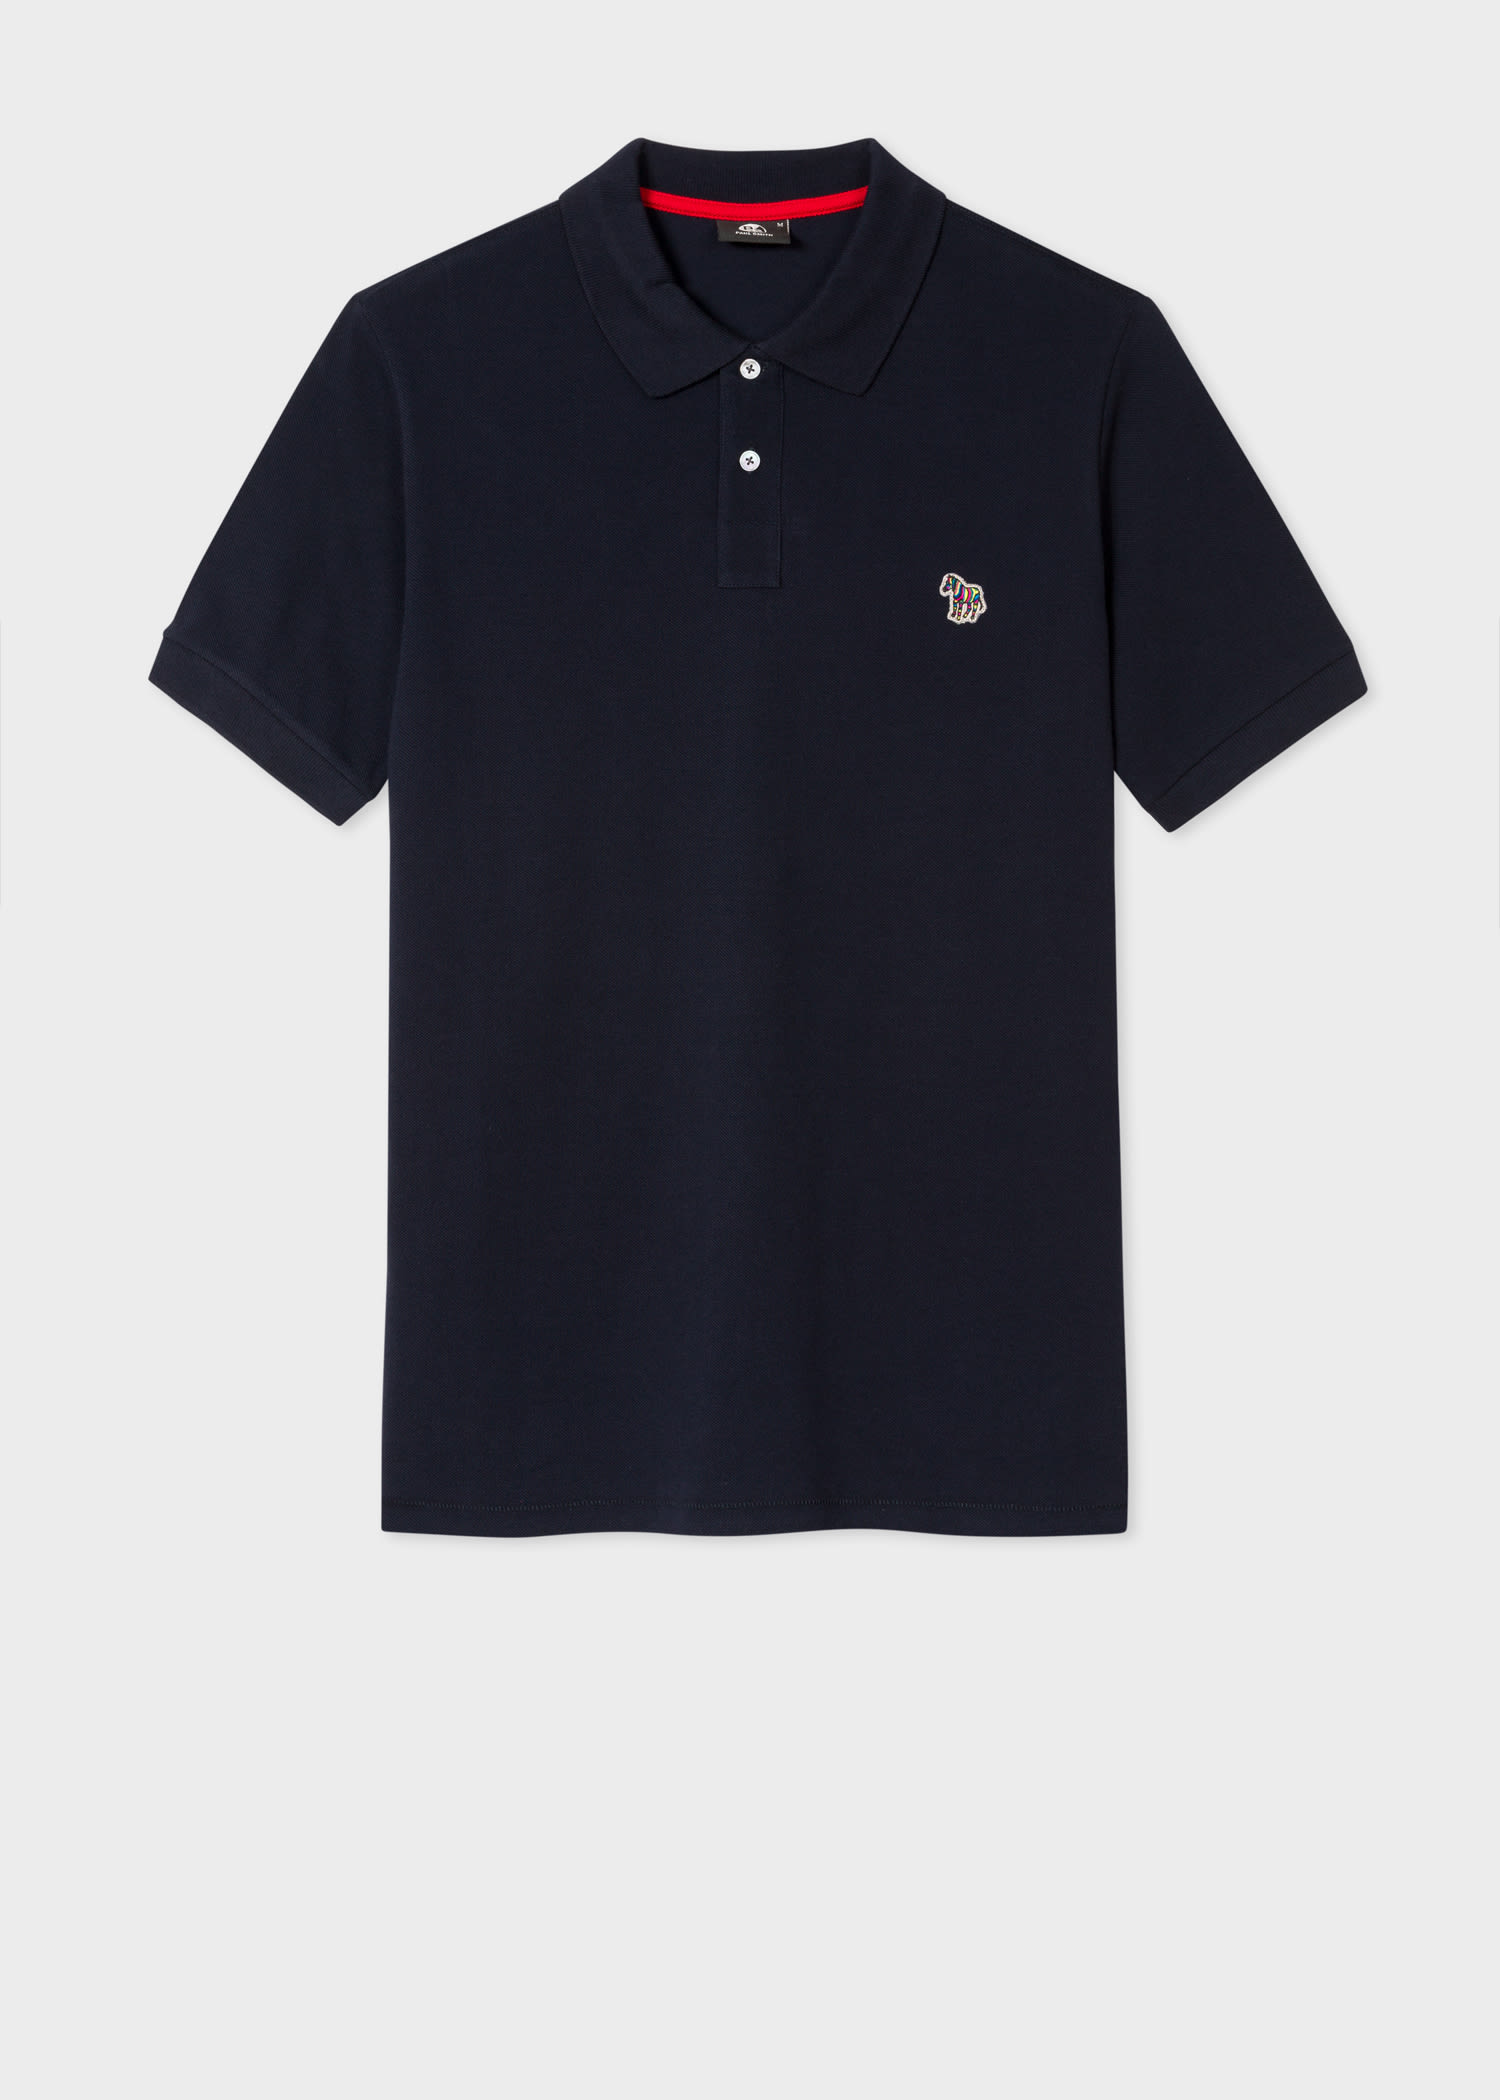 Men's Dark Navy Cotton-Piqué Zebra Logo Polo Shirt